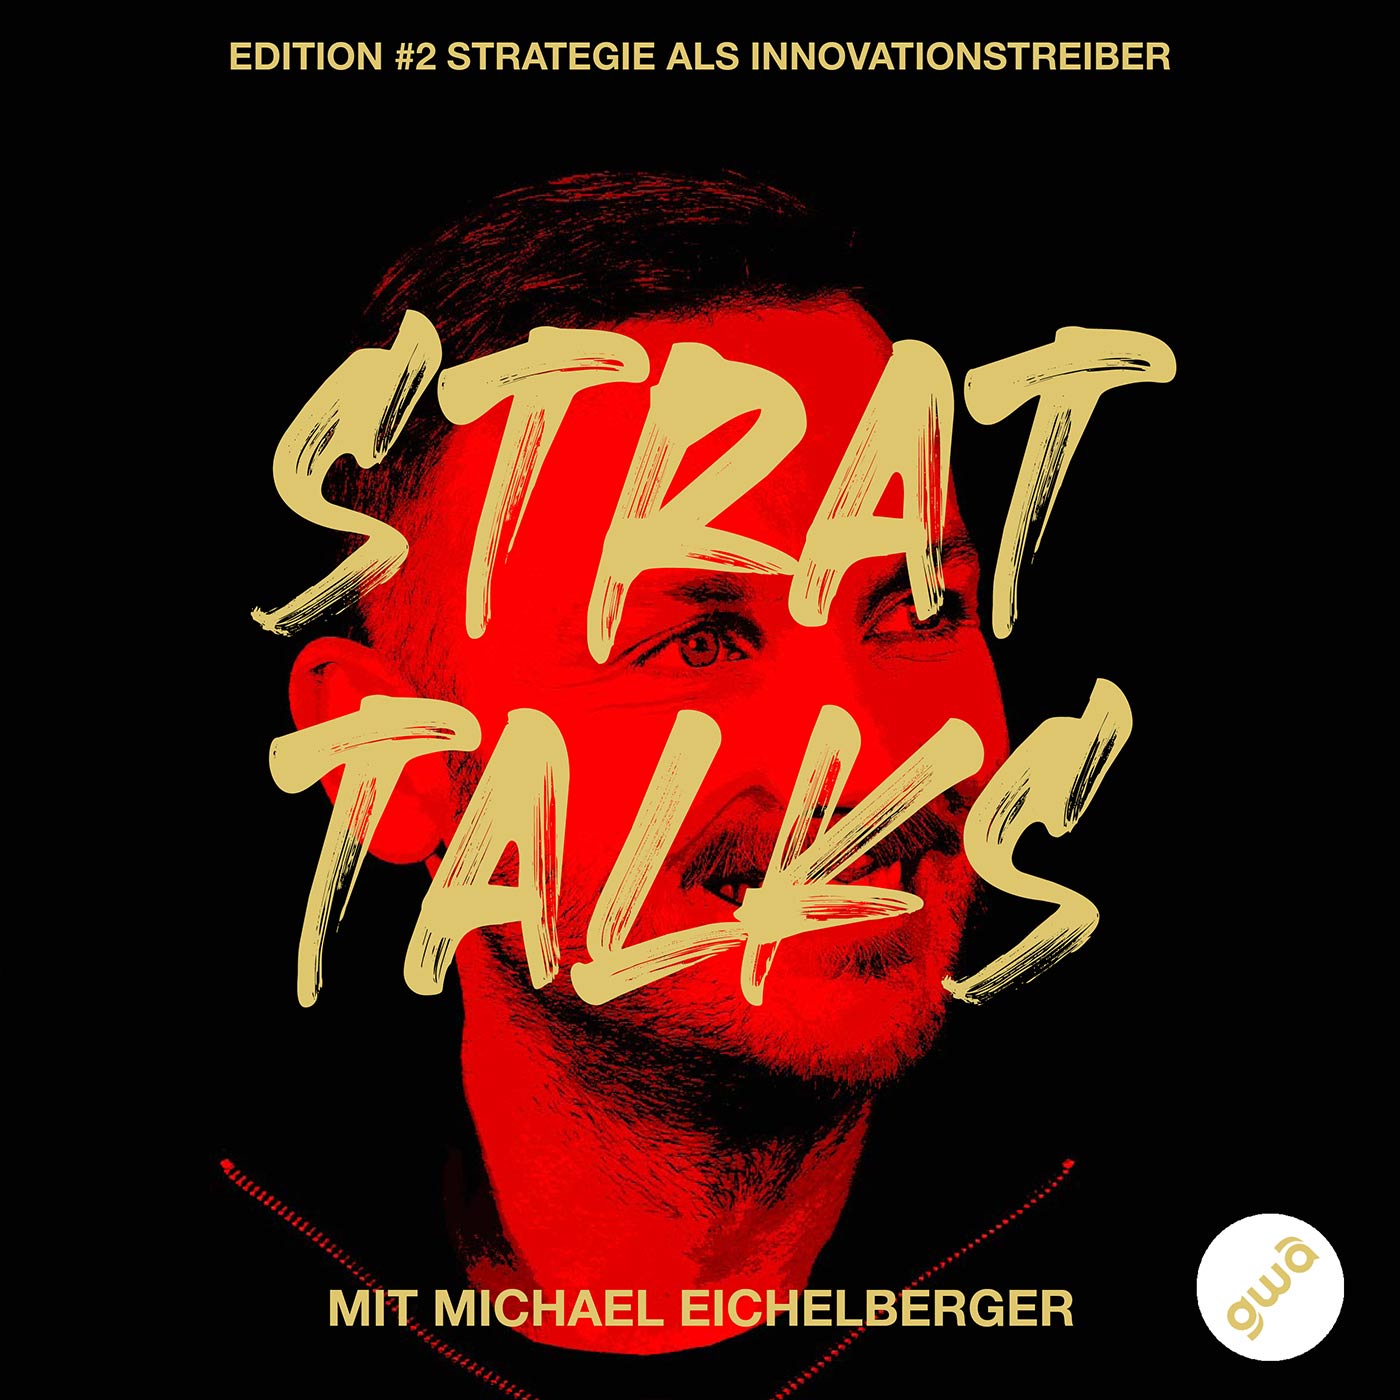 #2/5 Michael Eichelberger  – “Geschichten erzählen, um Veränderung zu gestalten”